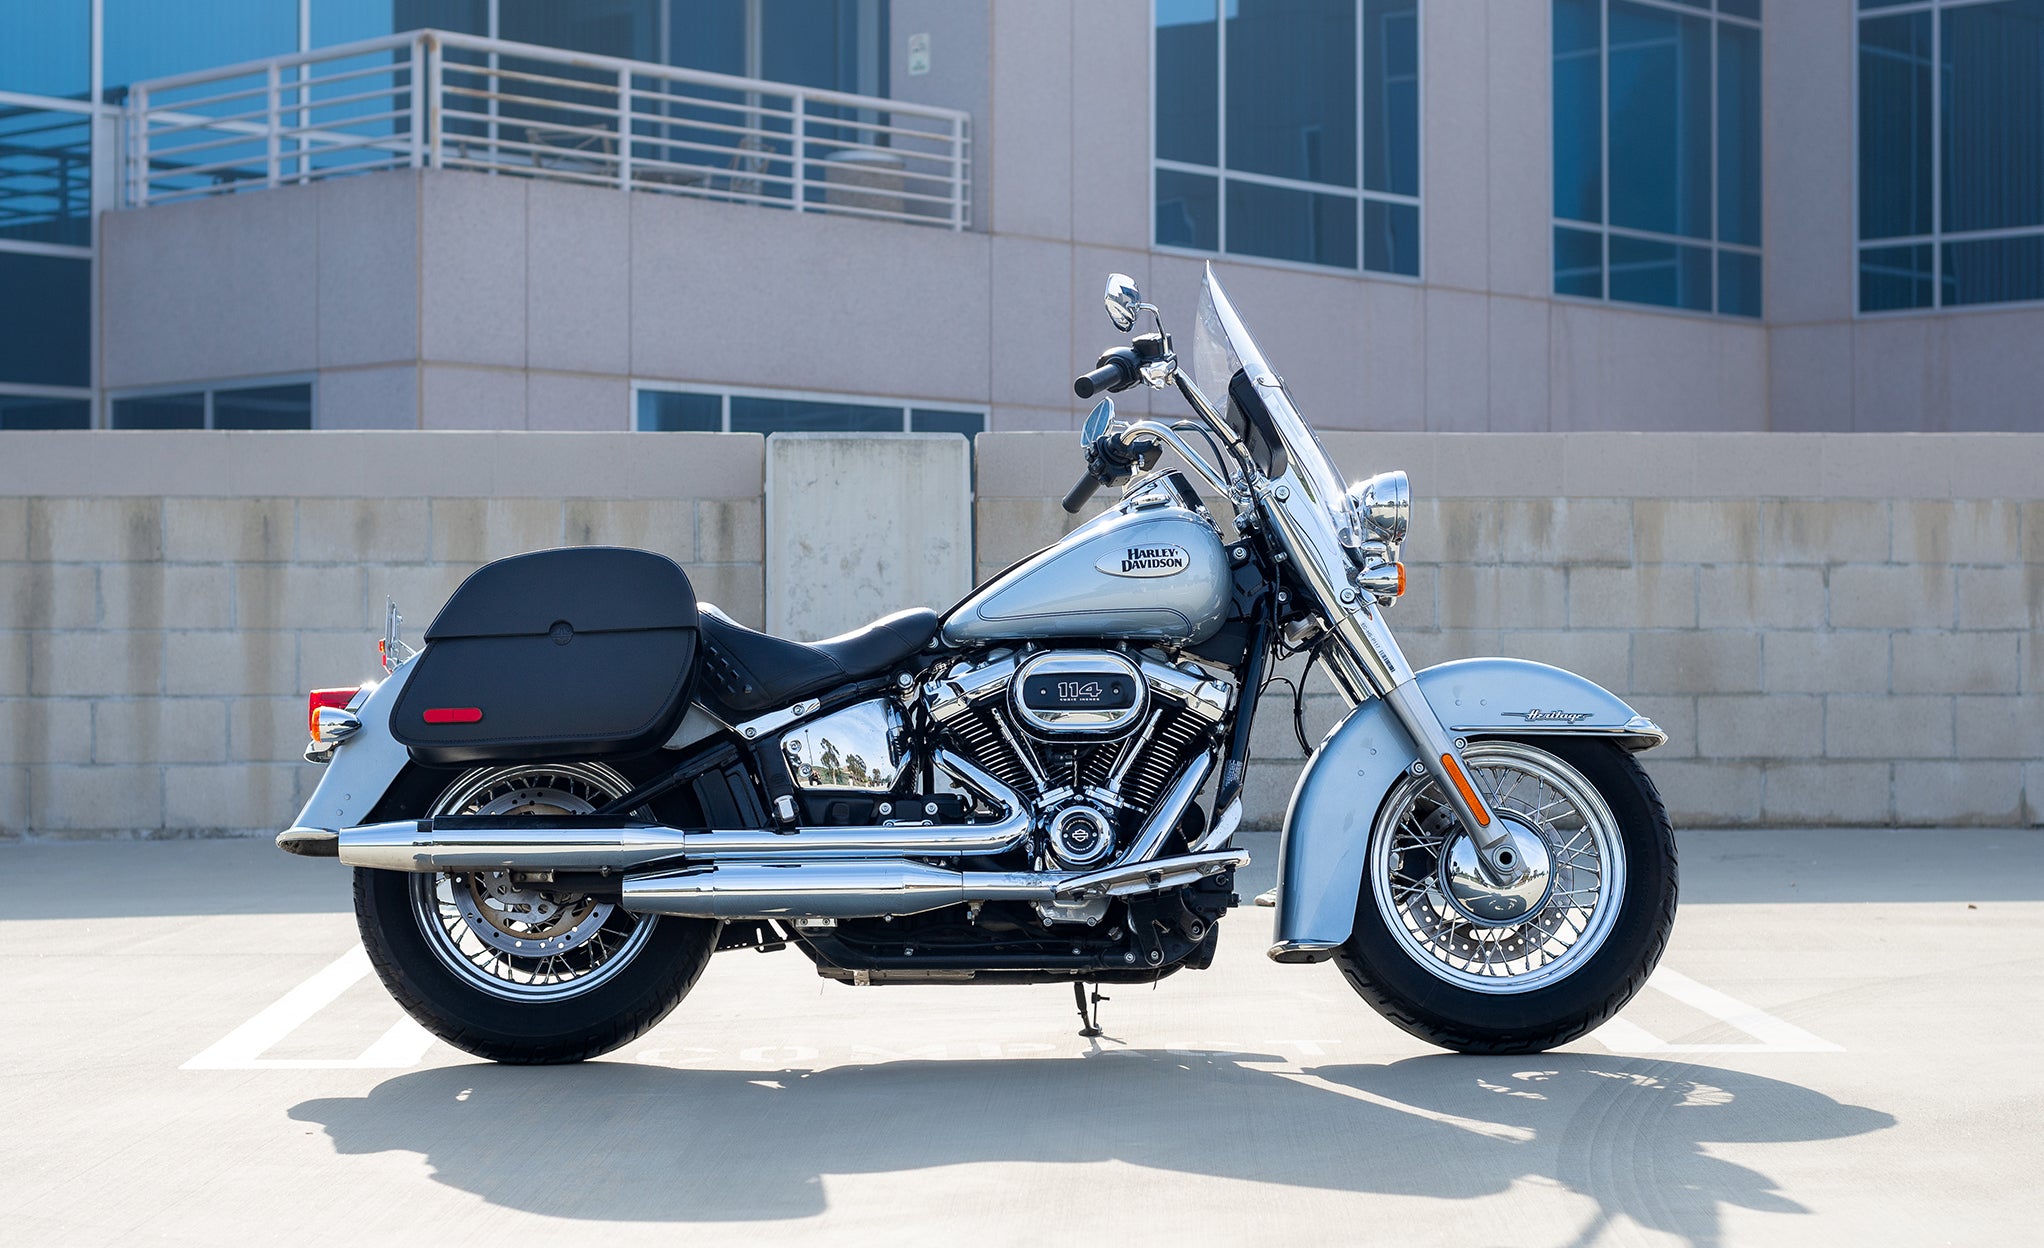 Viking Panzer Large Leather Motorcycle Saddlebags For Harley Davidson Softail Heritage Flst I C Ci @expand